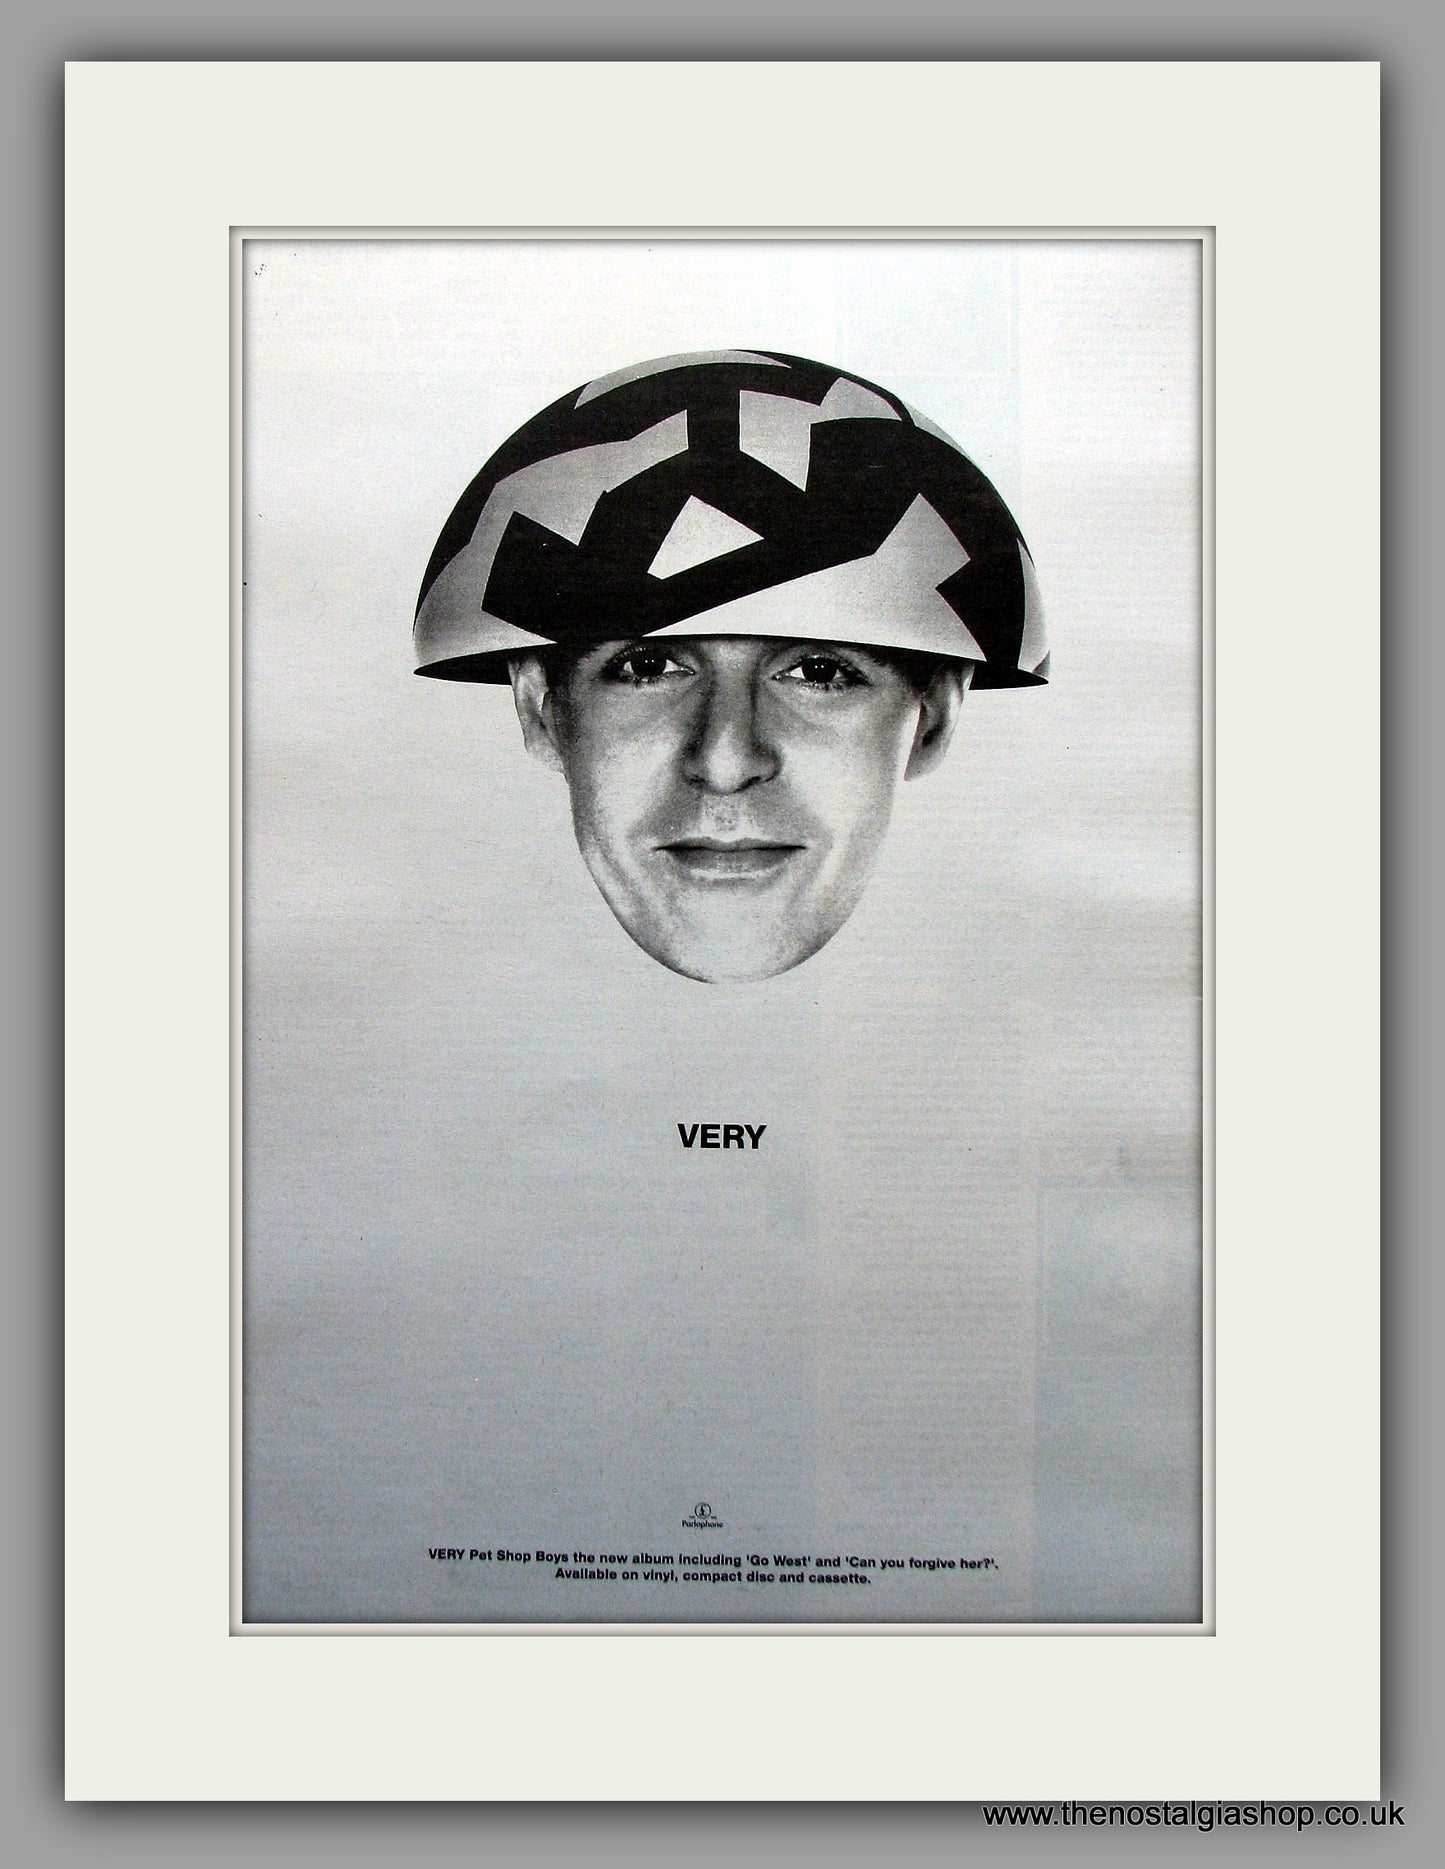 Pet Shop Boys - Very. Original Vintage Advert 1993 (ref AD10971)